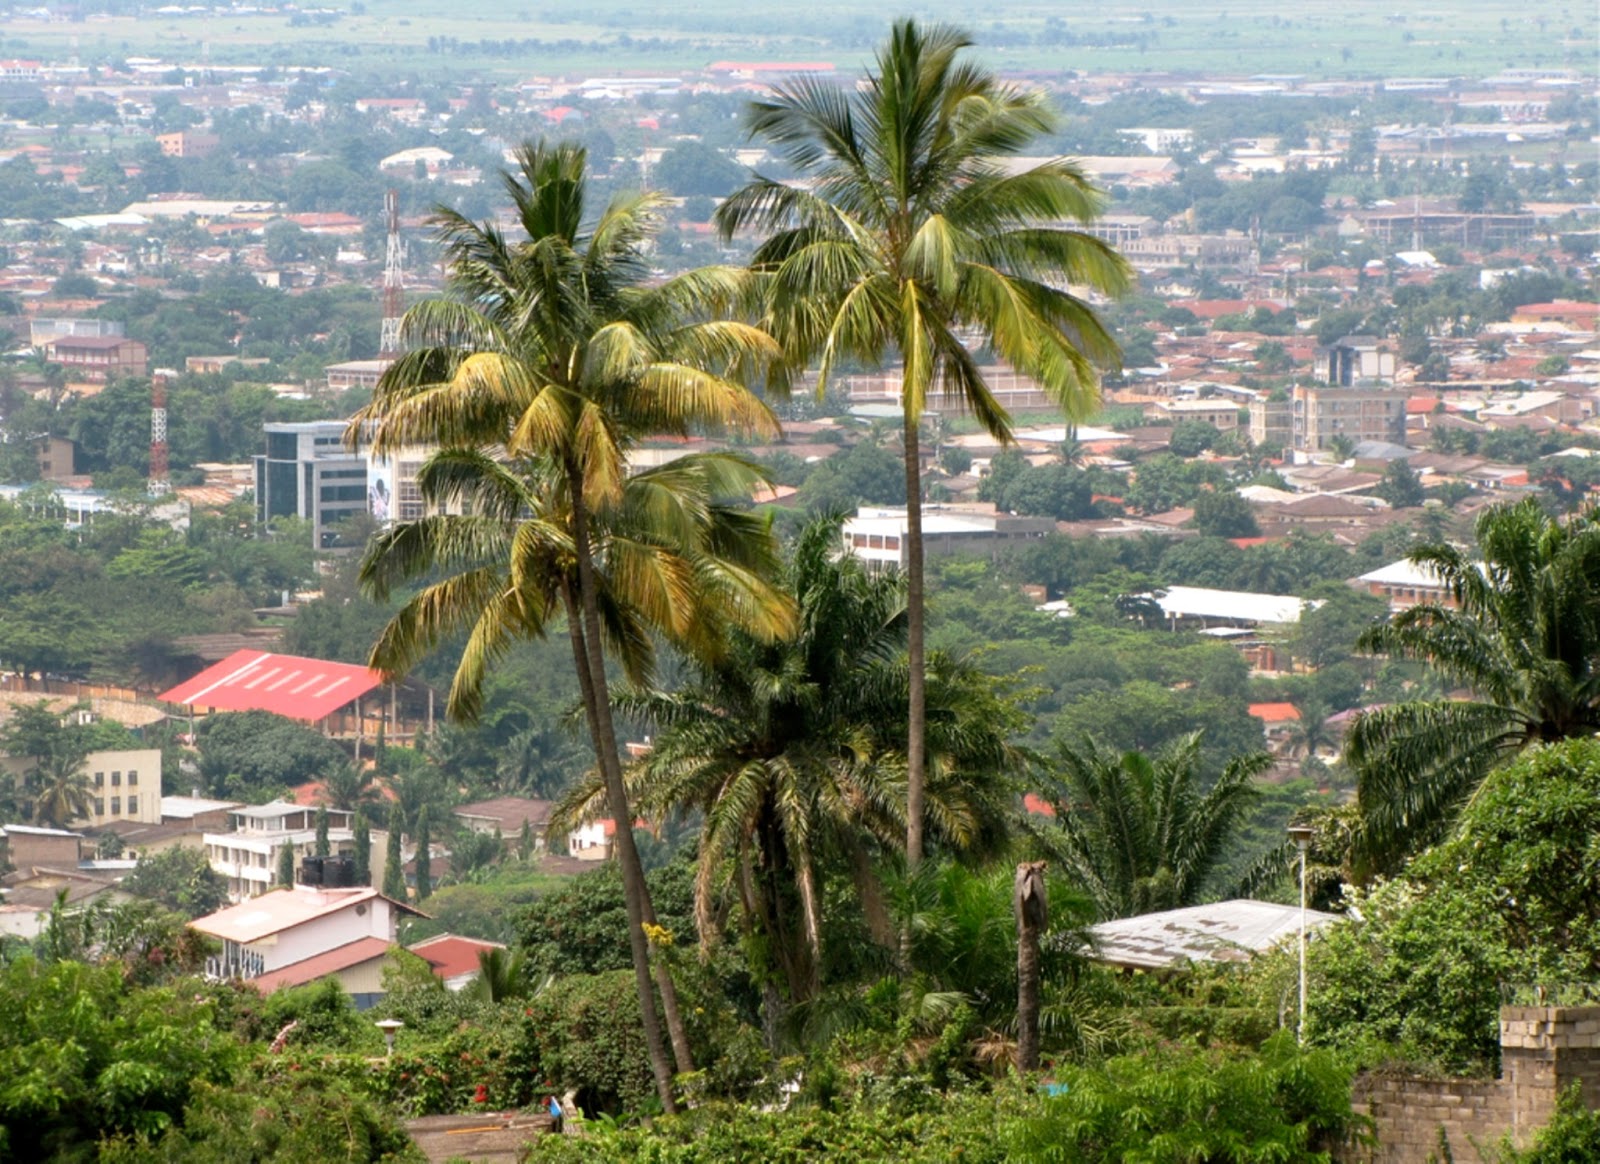 Travel & Adventures: Burundi. A voyage to Burundi, Africa - Bujumbura